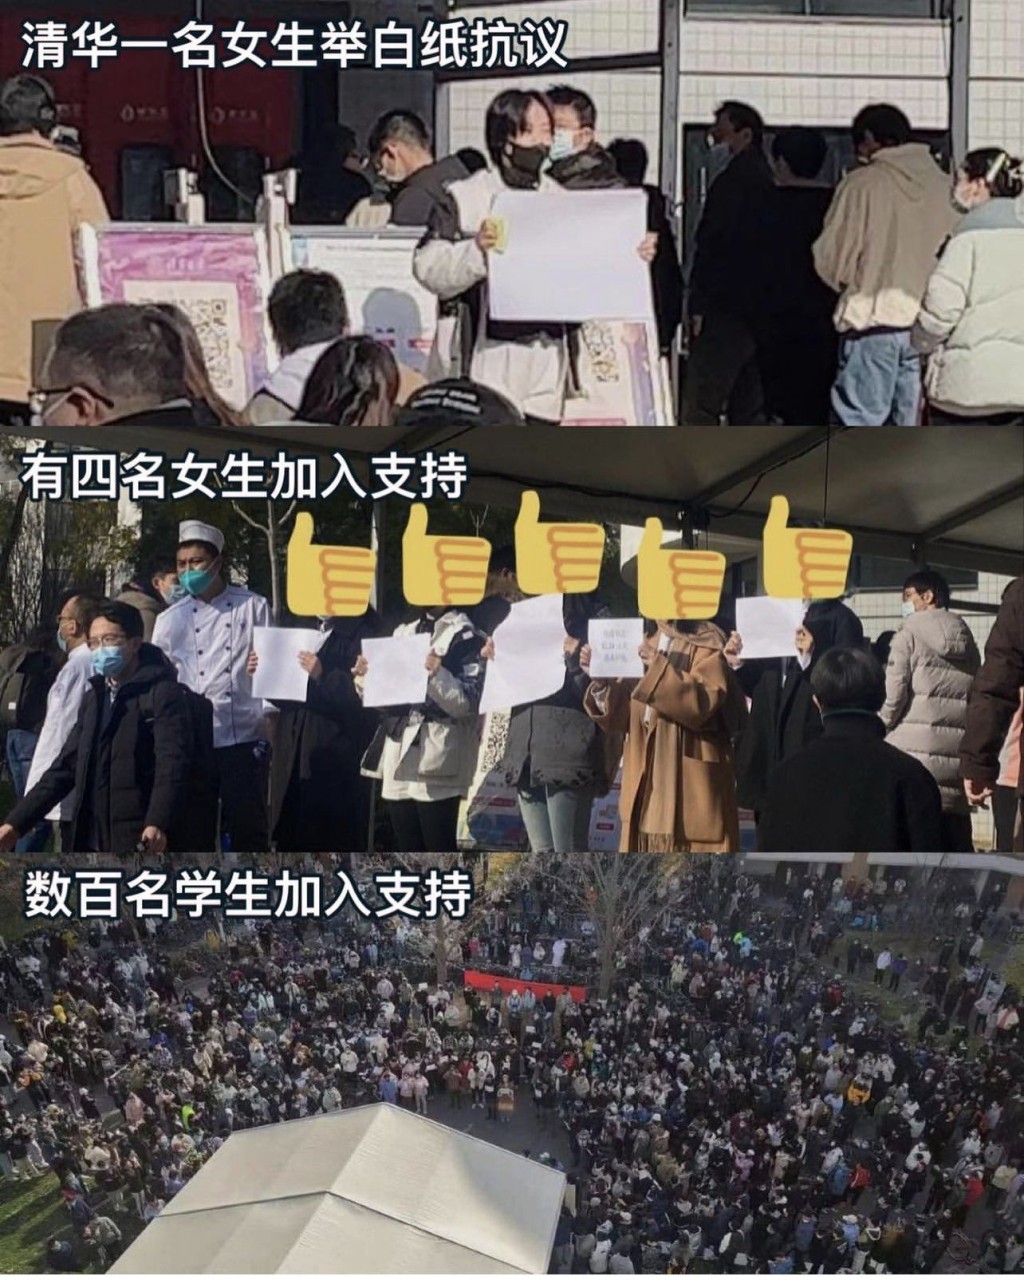 网传北京清华等百所大学爆发白纸抗议。